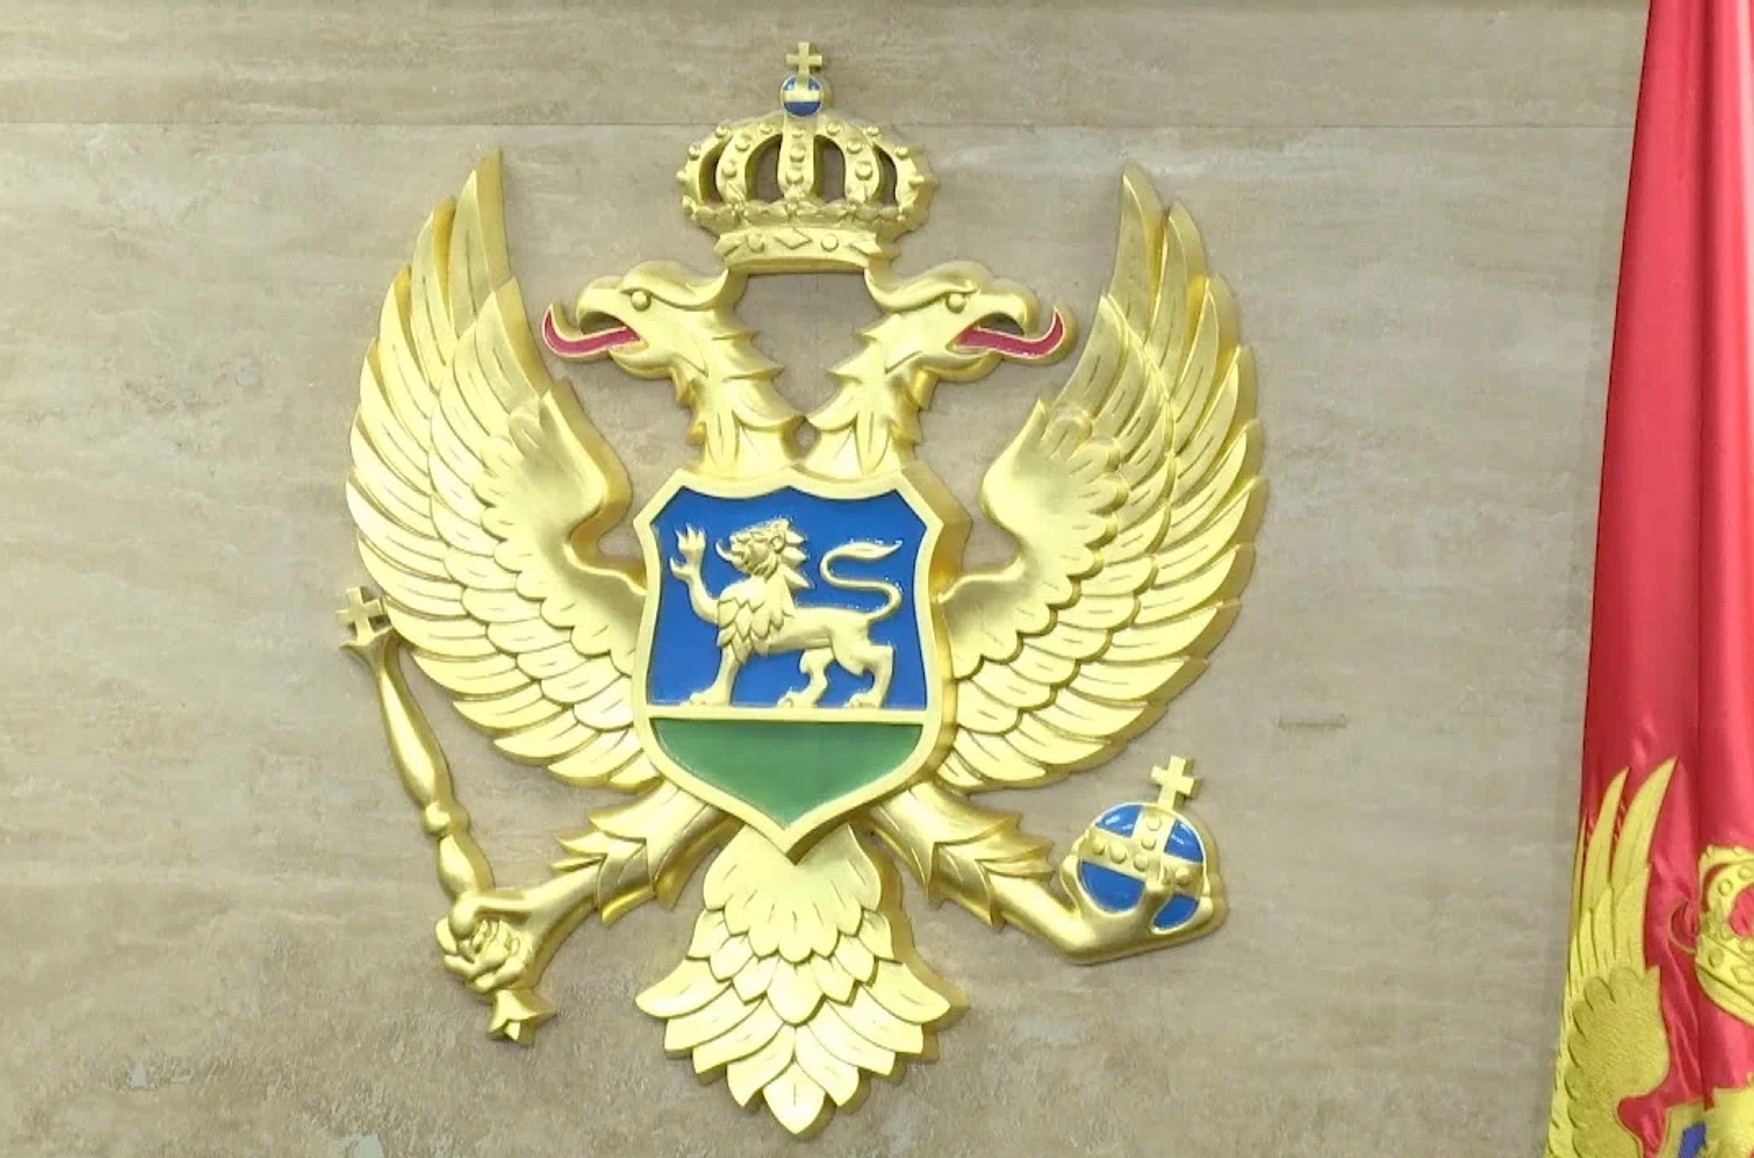 Черногория присоединилась к пакету санкций против РФ. Споры об этом велись в правительстве больше месяца